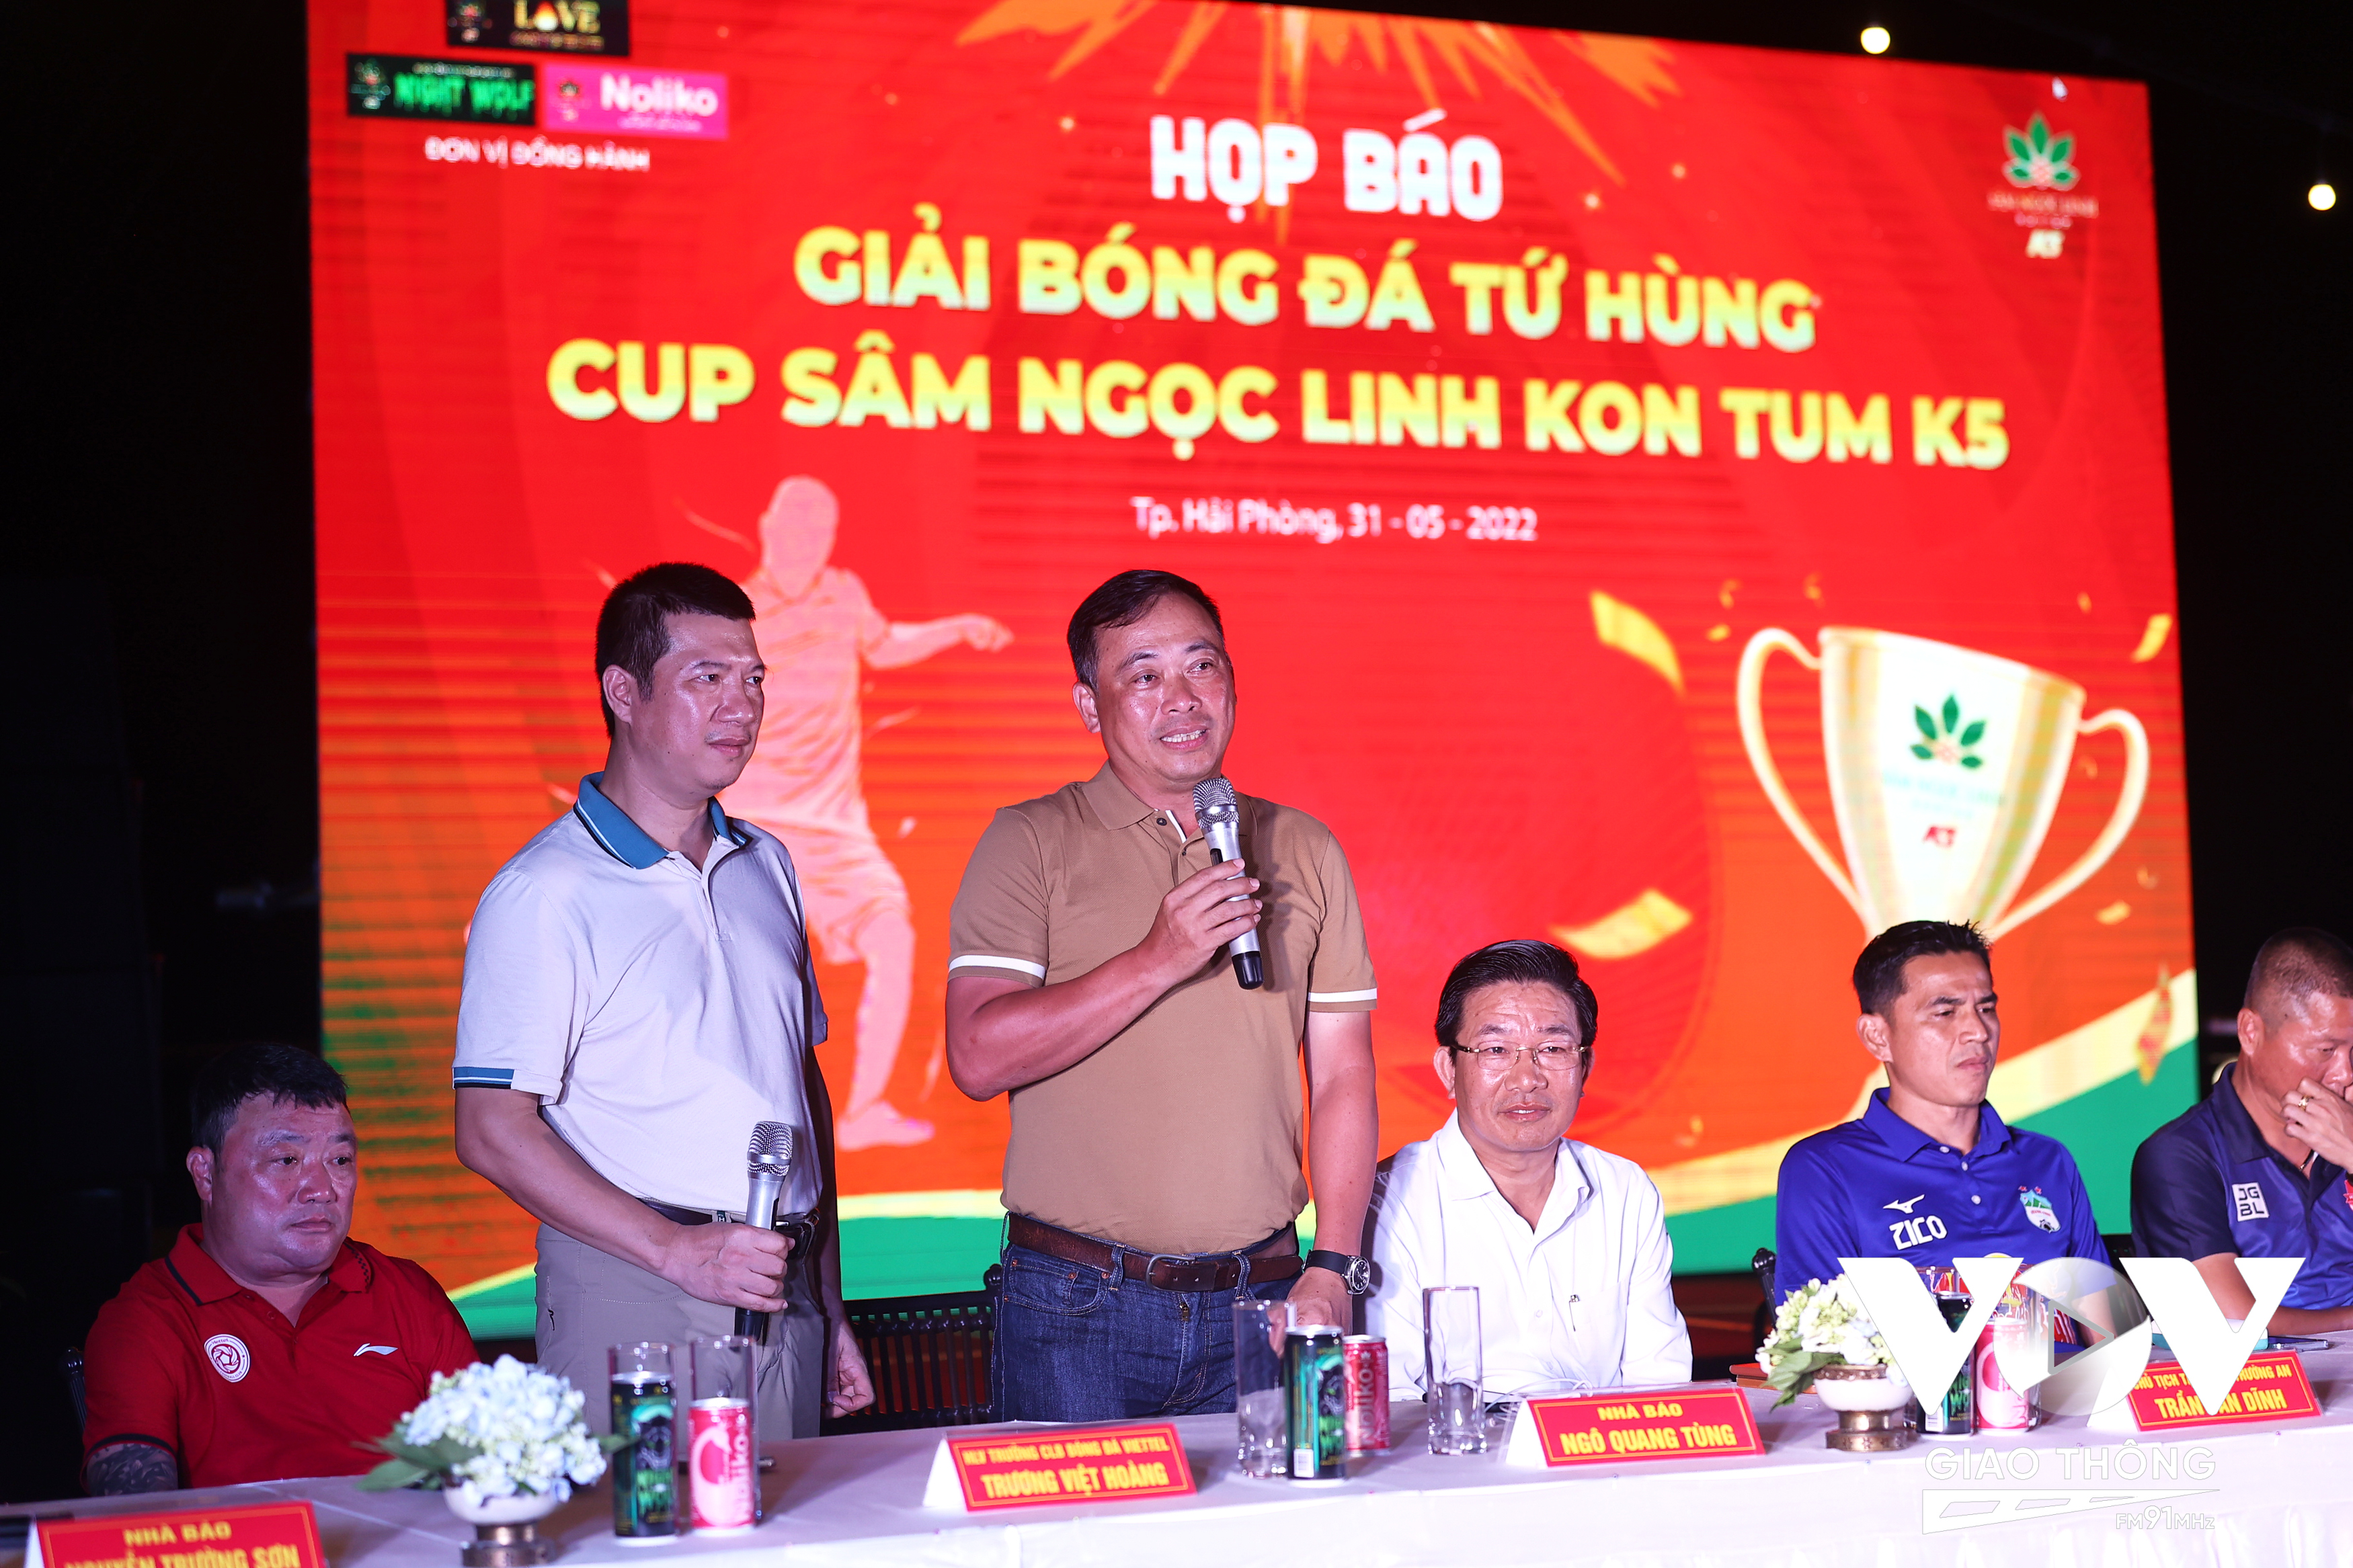 “Giải bóng đá tứ hùng cúp sâm Ngọc Linh Kon Tum K5 2022” hứa hẹn sẽ cống hiến cho người hâm mộ những trận đấu đẹp mắt.